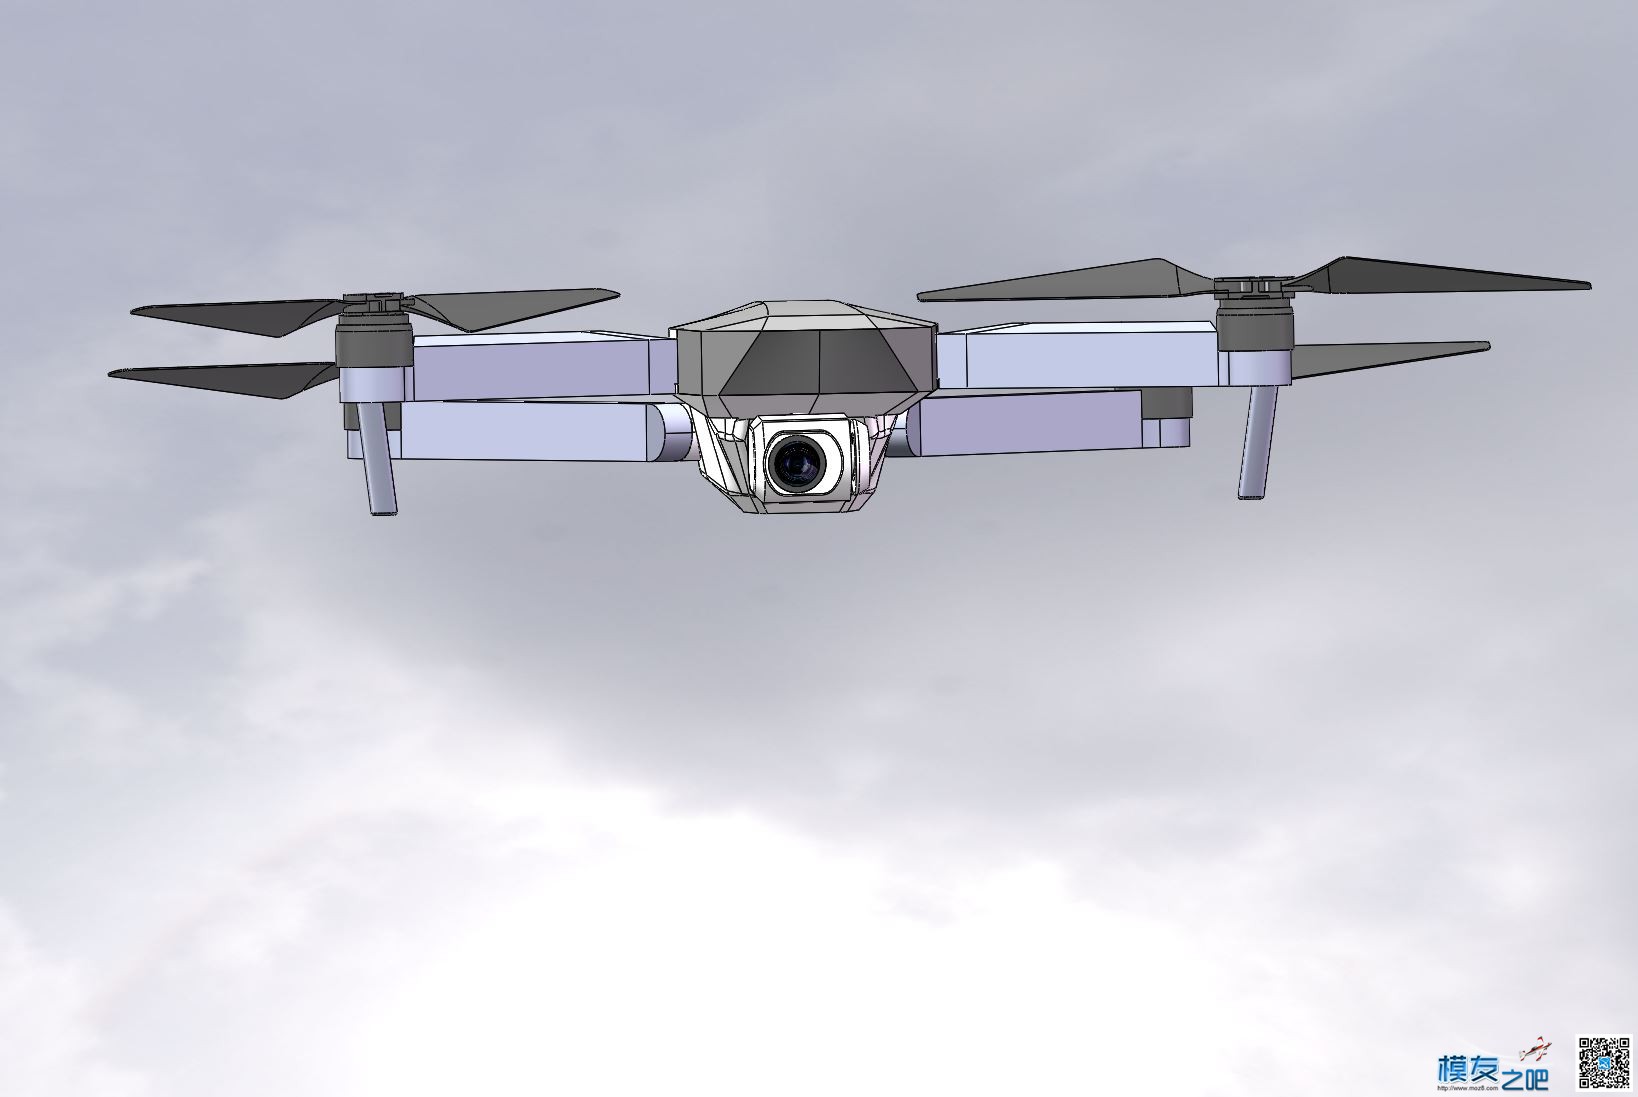 自制大疆mavic折叠无人机 全新设计 慢更 无人机,穿越机,电池,云台,图传 作者:zoney 9232 